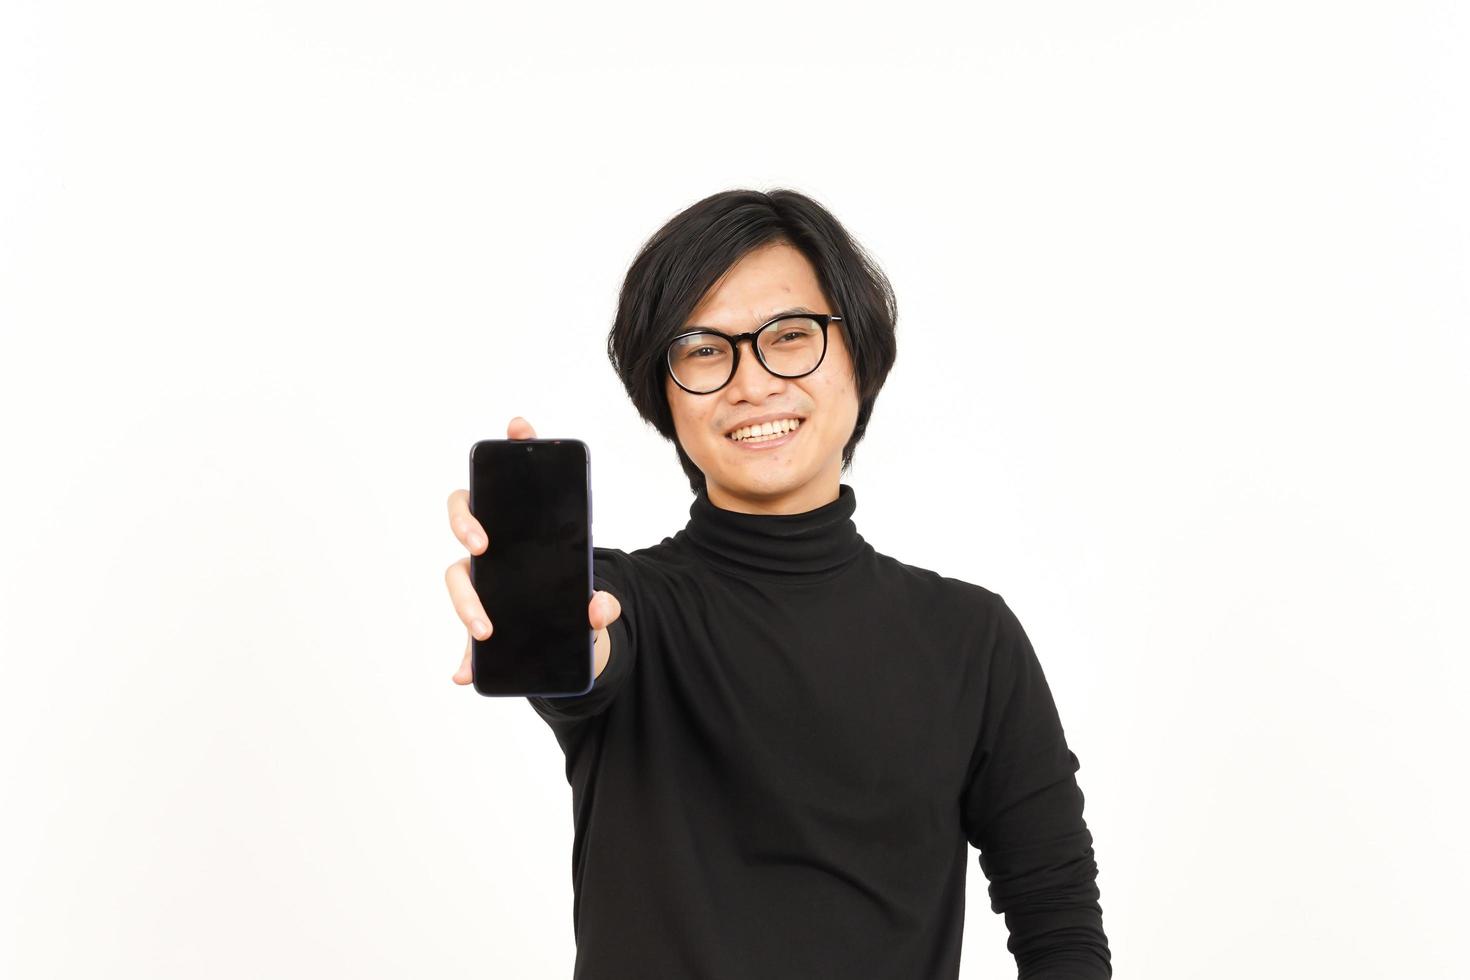 demostración aplicaciones o anuncios en blanco pantalla teléfono inteligente de hermoso asiático hombre aislado en blanco antecedentes foto